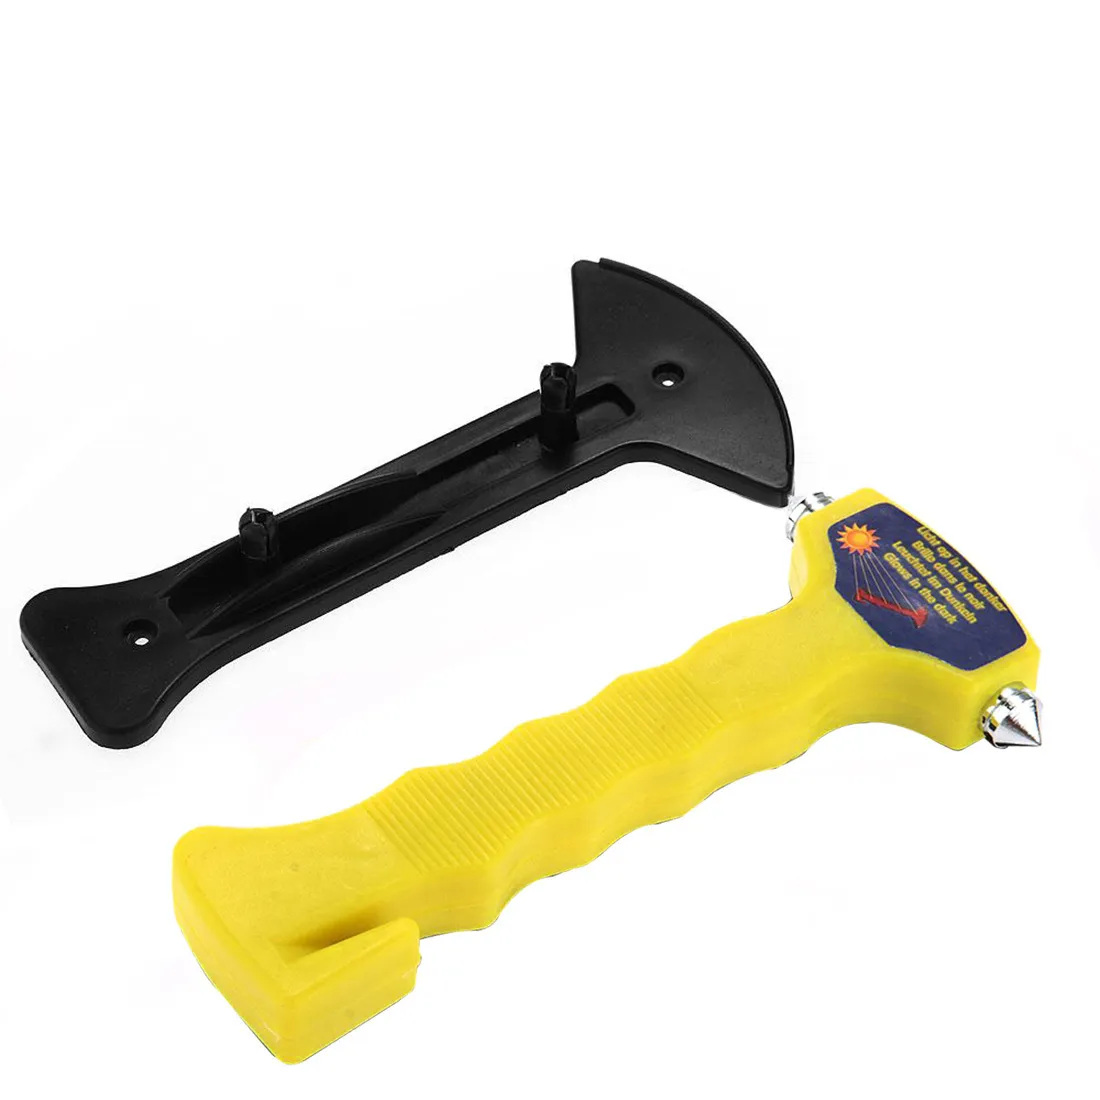 Hot Sprzedaży Samochód Emergency Hammer Seatbelt Cutter Okno Breaker Auto Ecape Tool